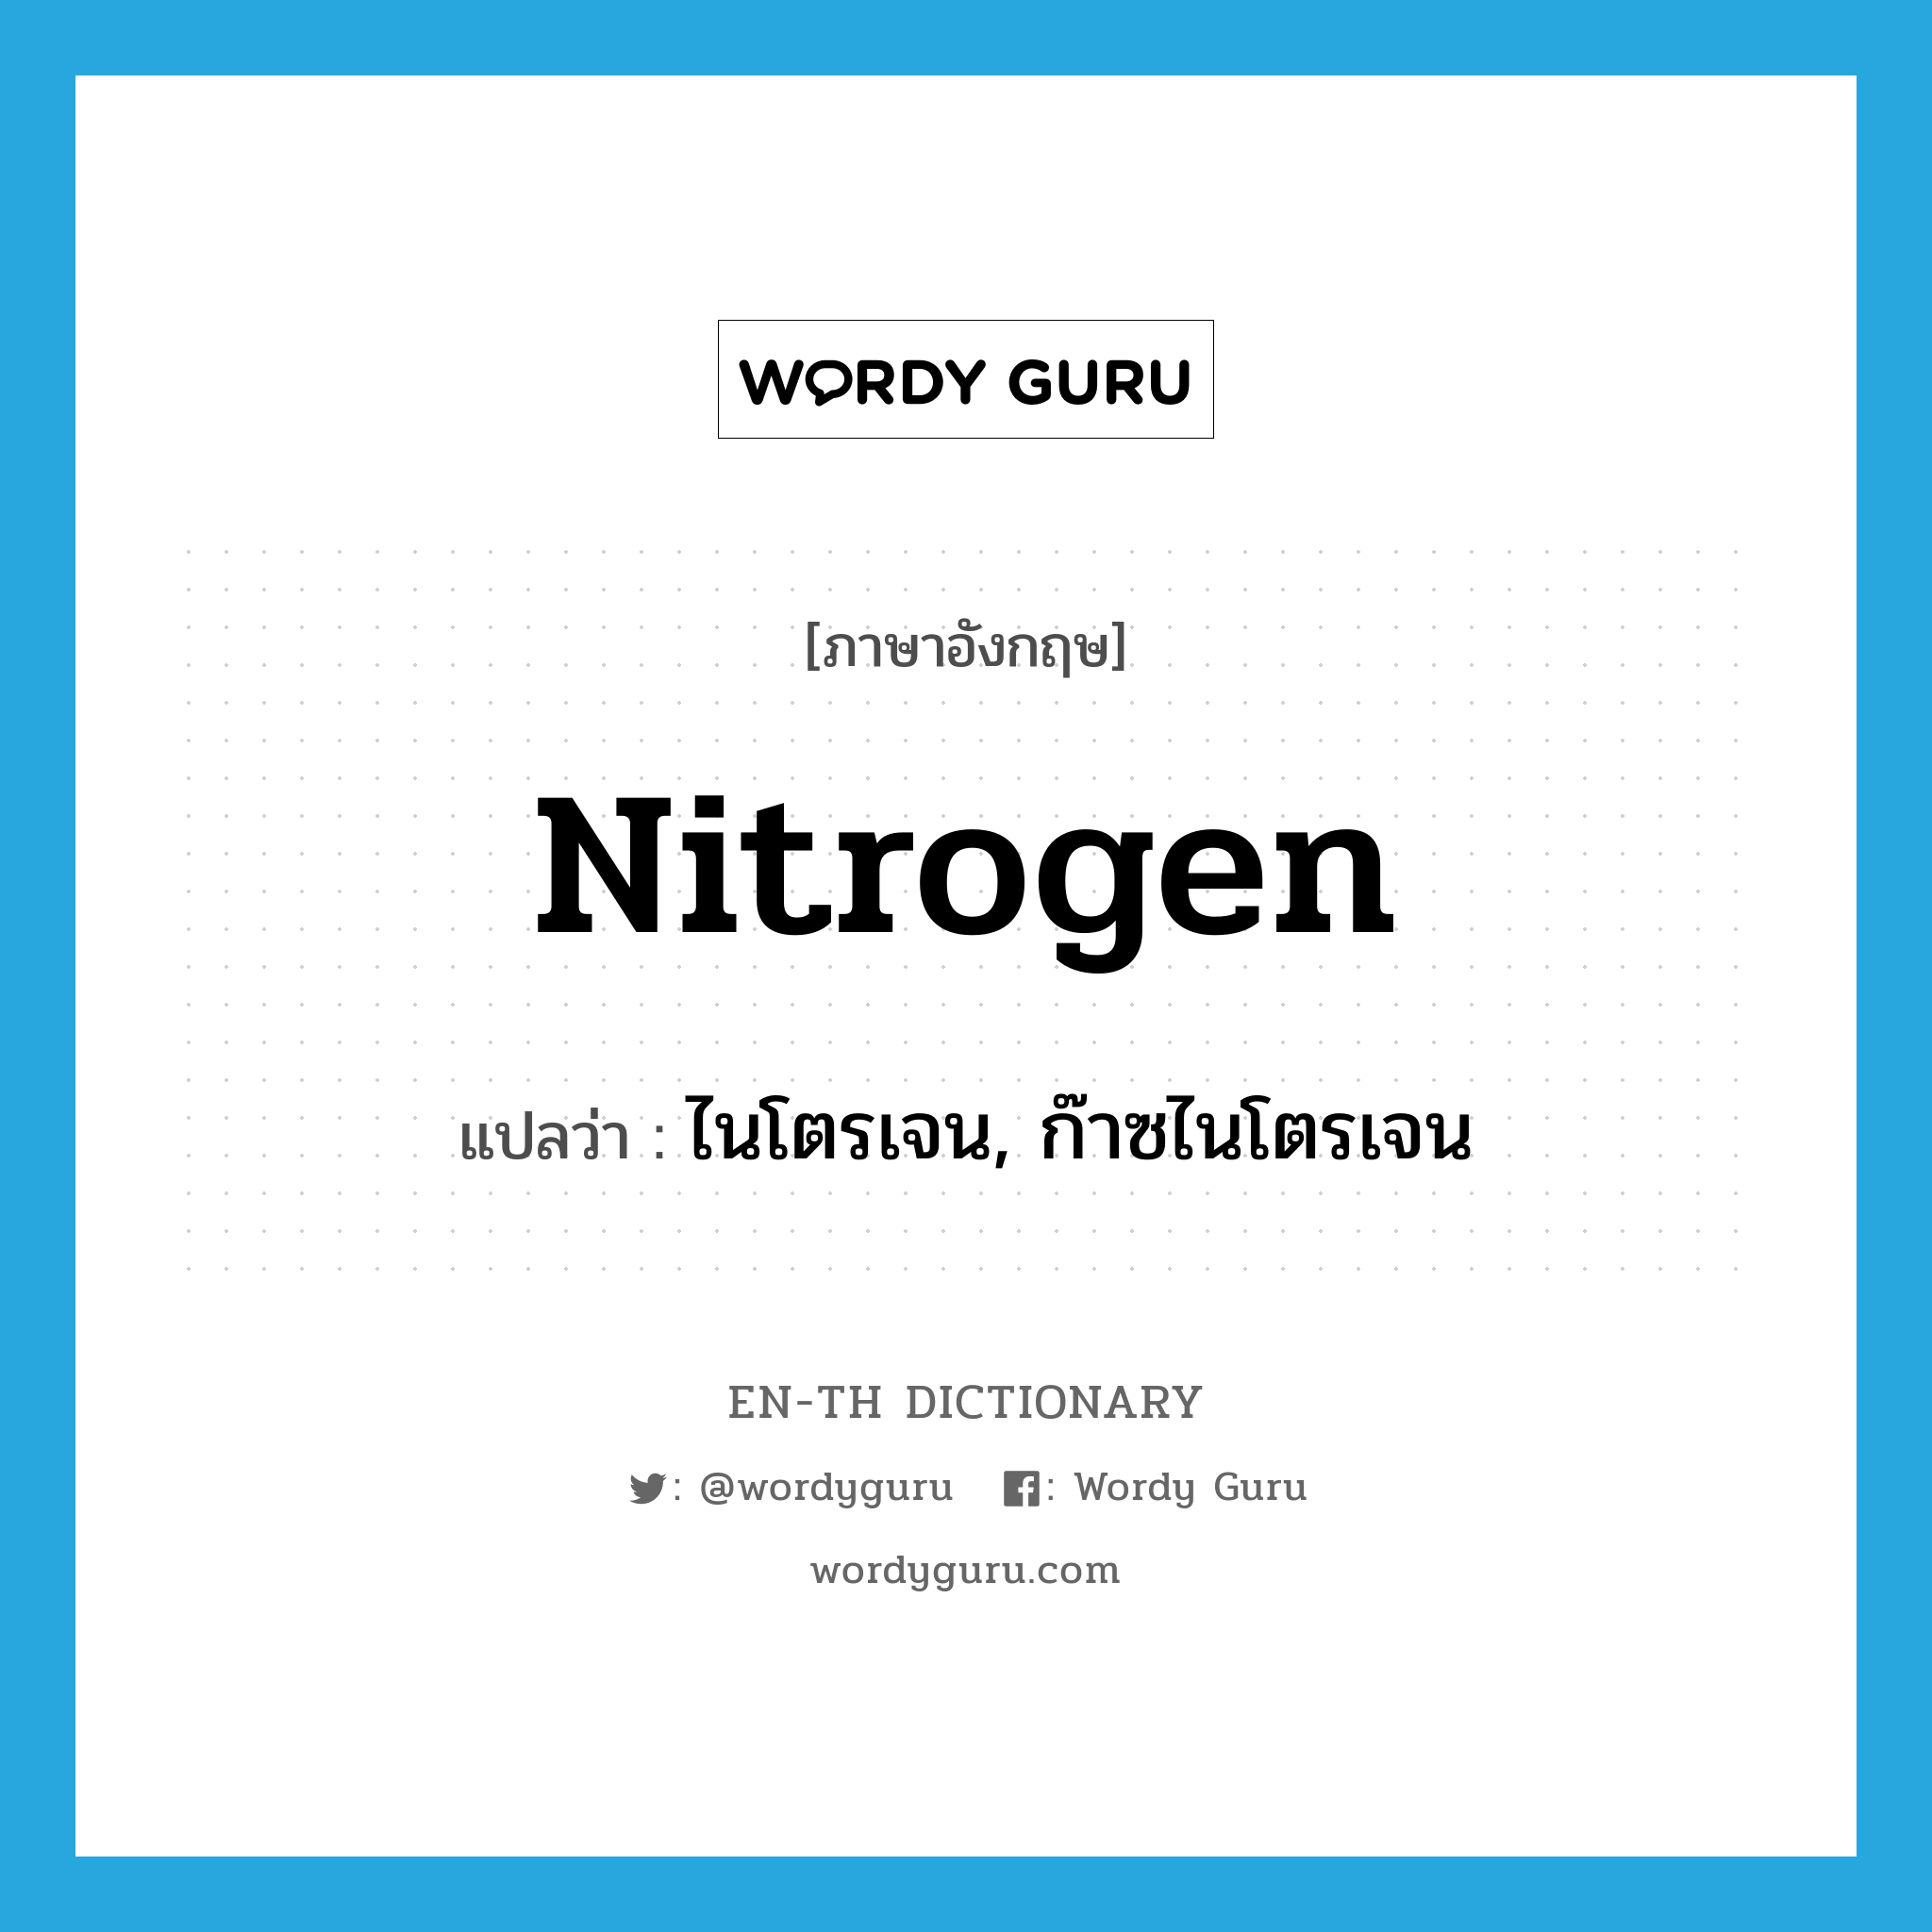 ไนโตรเจน, ก๊าซไนโตรเจน ภาษาอังกฤษ?, คำศัพท์ภาษาอังกฤษ ไนโตรเจน, ก๊าซไนโตรเจน แปลว่า nitrogen ประเภท N หมวด N